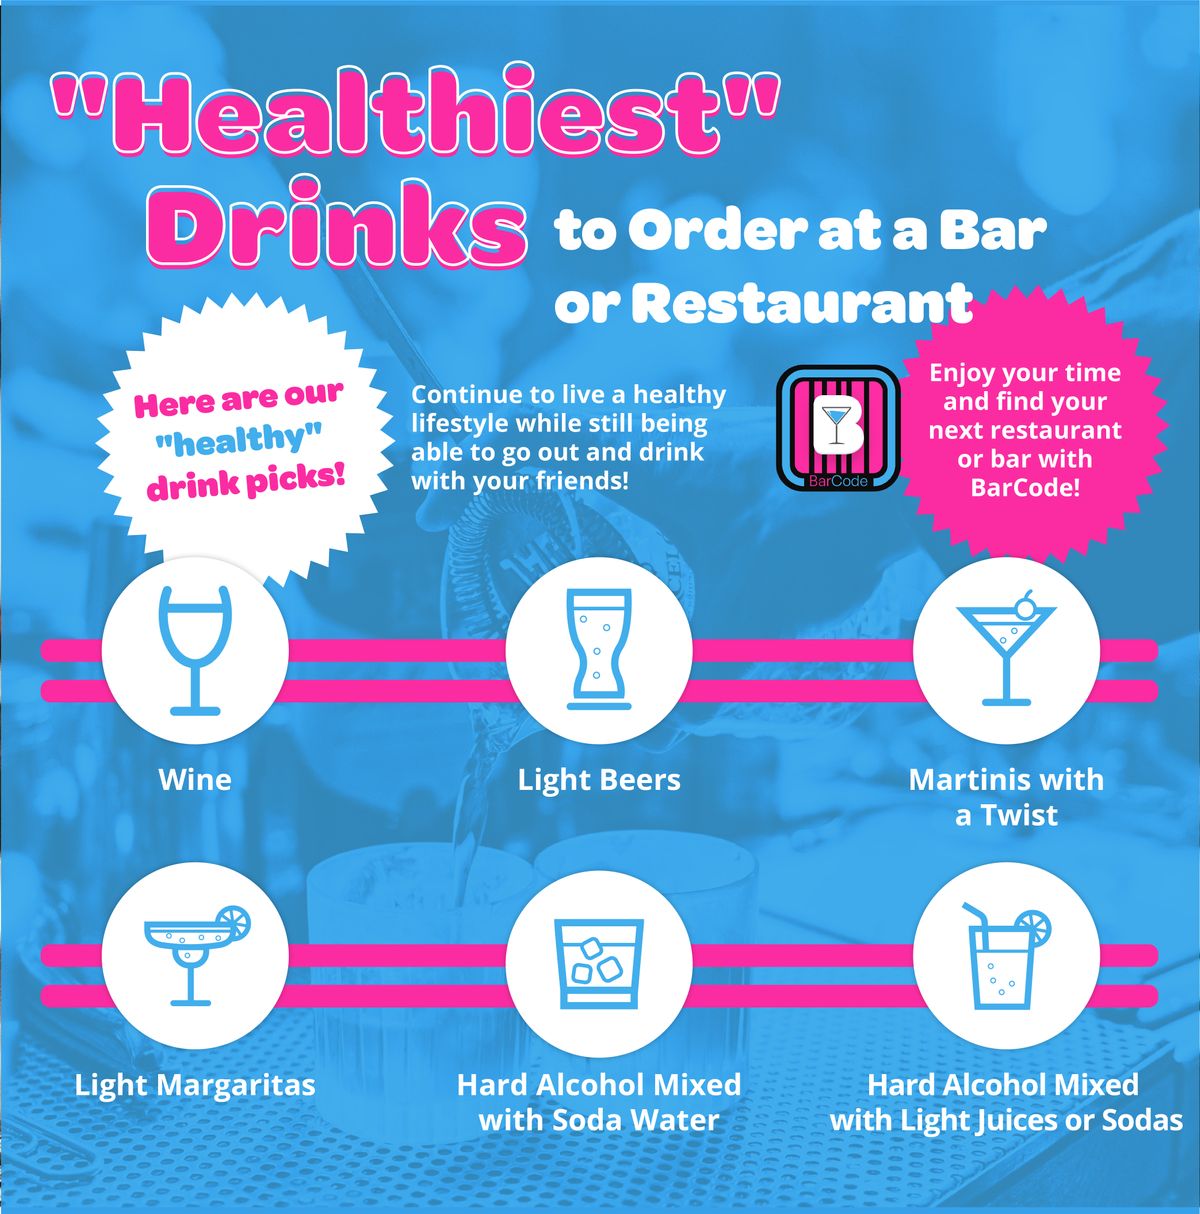 Copy of healthiest-drinks.jpg